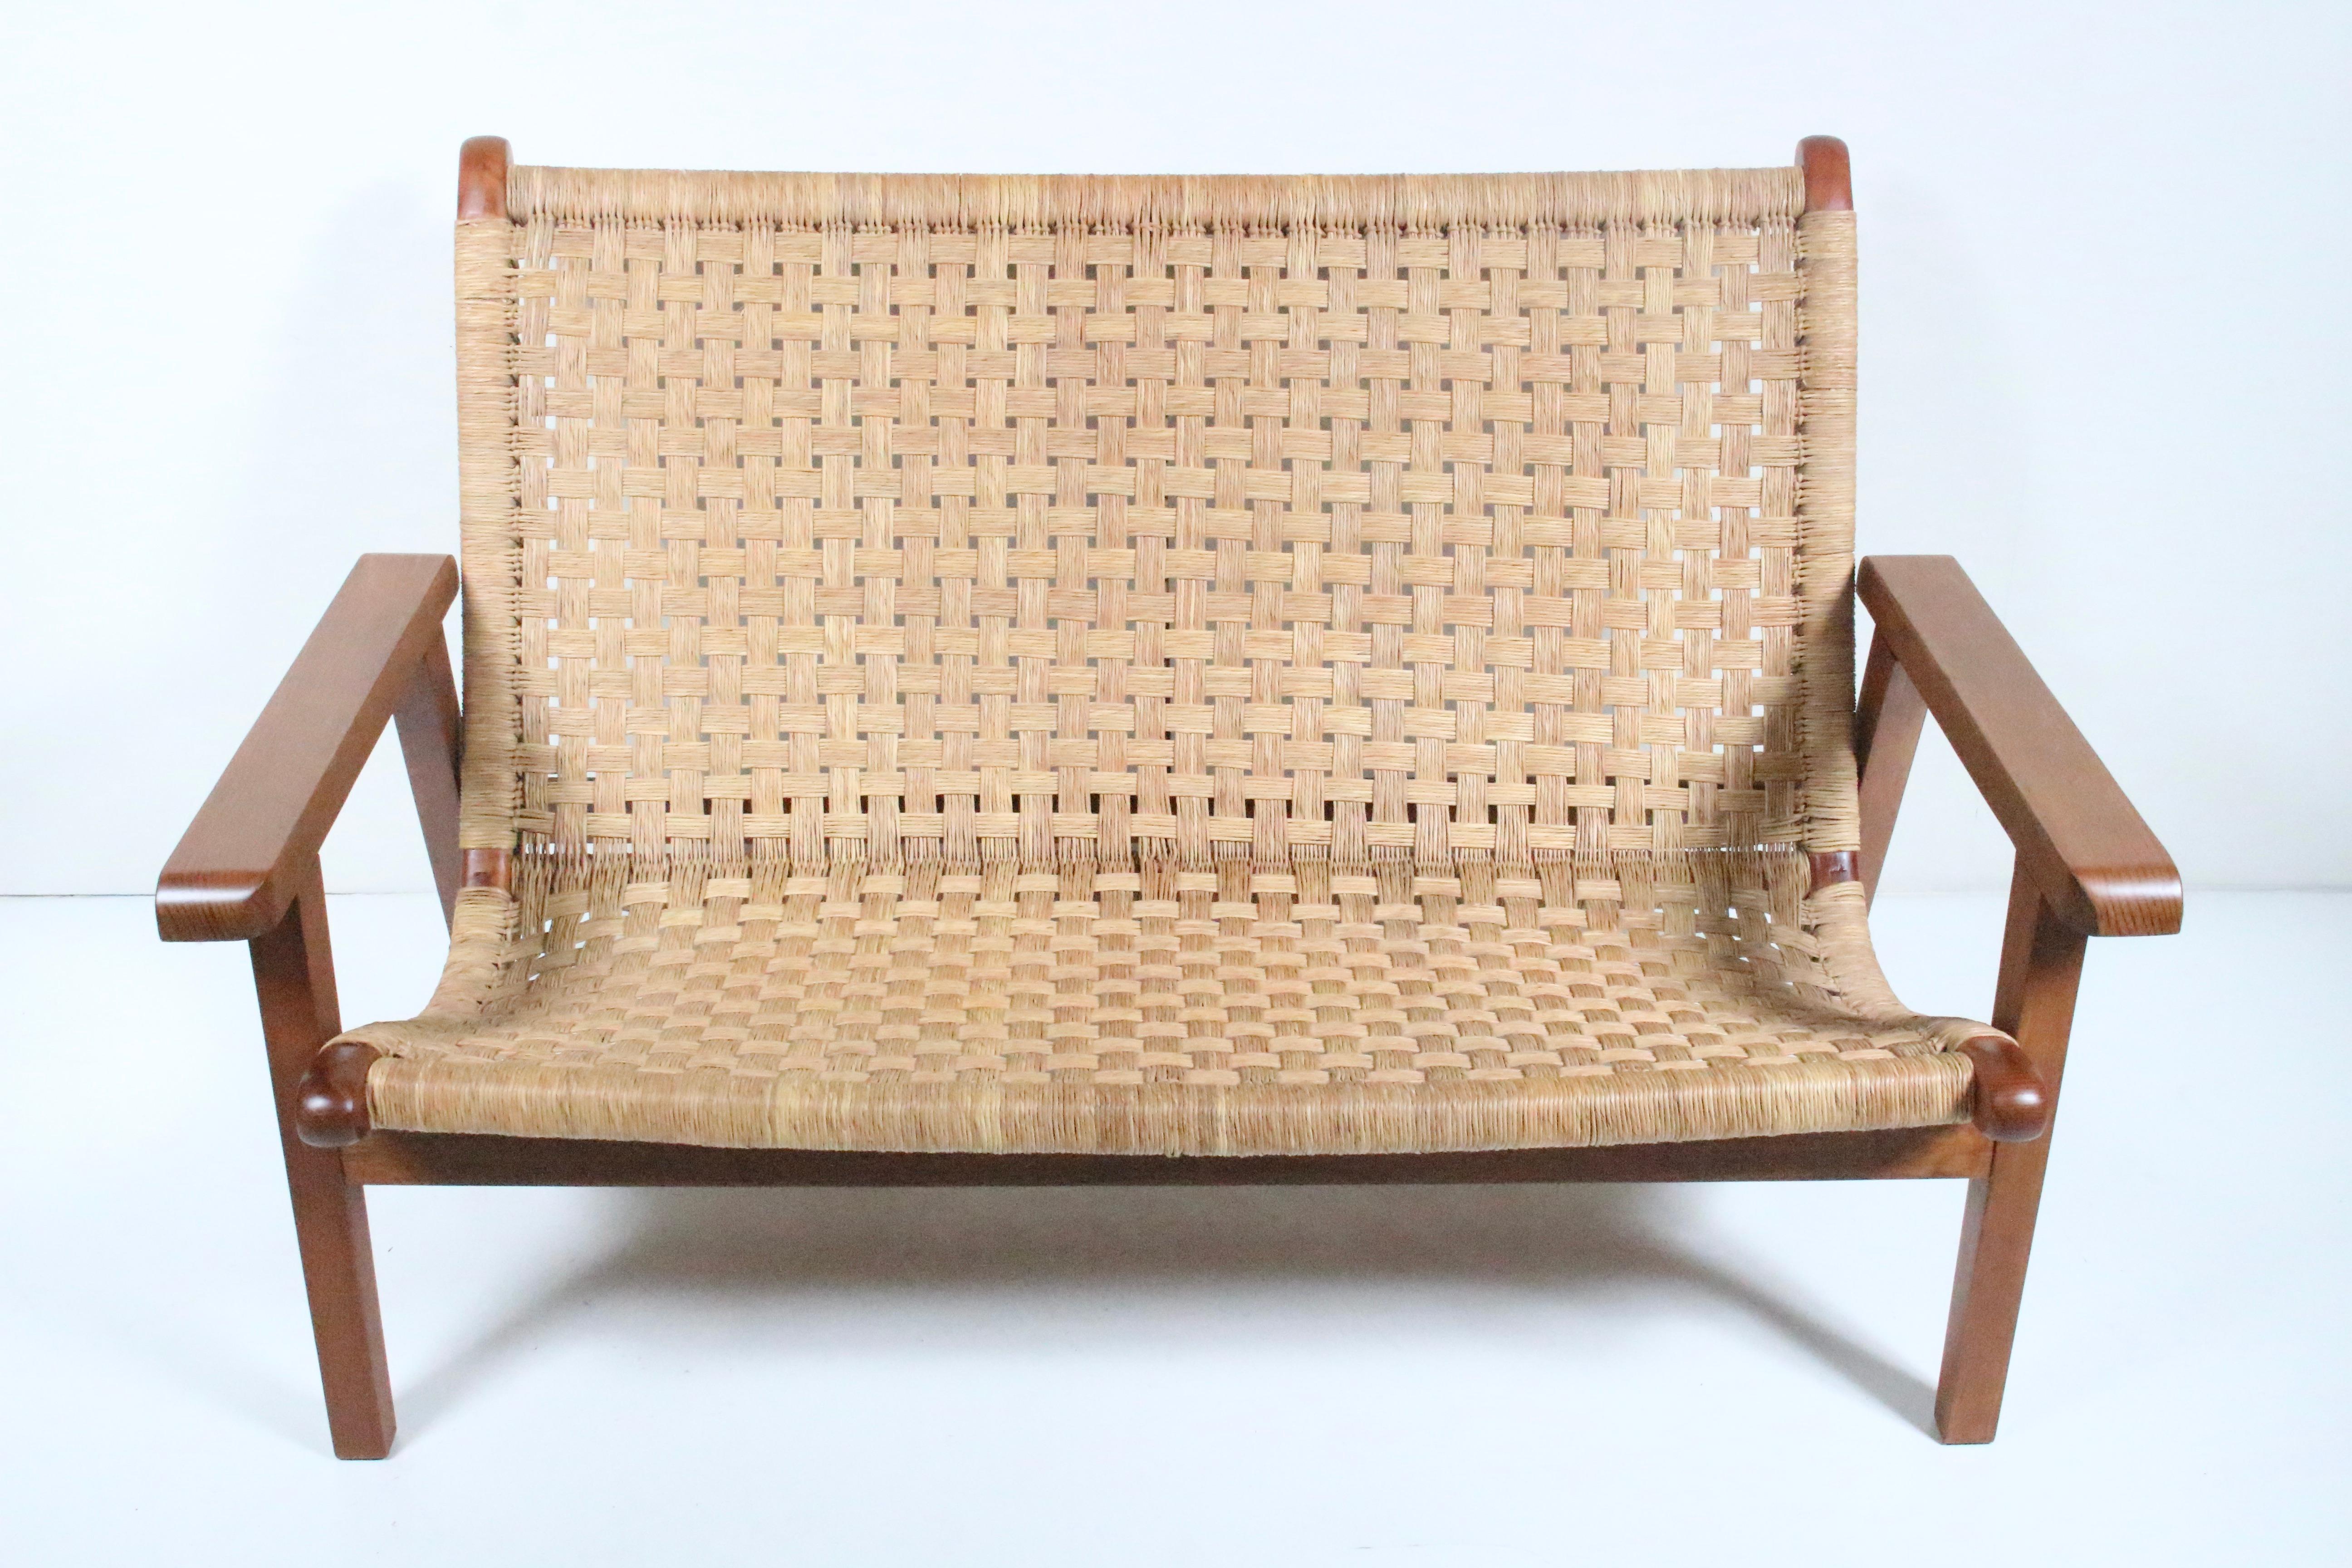 Mexican Modern Michael van Beuren Lounge-Sofa aus Teakholz und geflochtenem Raffia. Mit einem robusten, funktionalen und komfortablen zweiteiligen Teakholzgestell, zwei Heringen zum Fixieren der Sitzfläche und einer mit Raffia umwickelten,